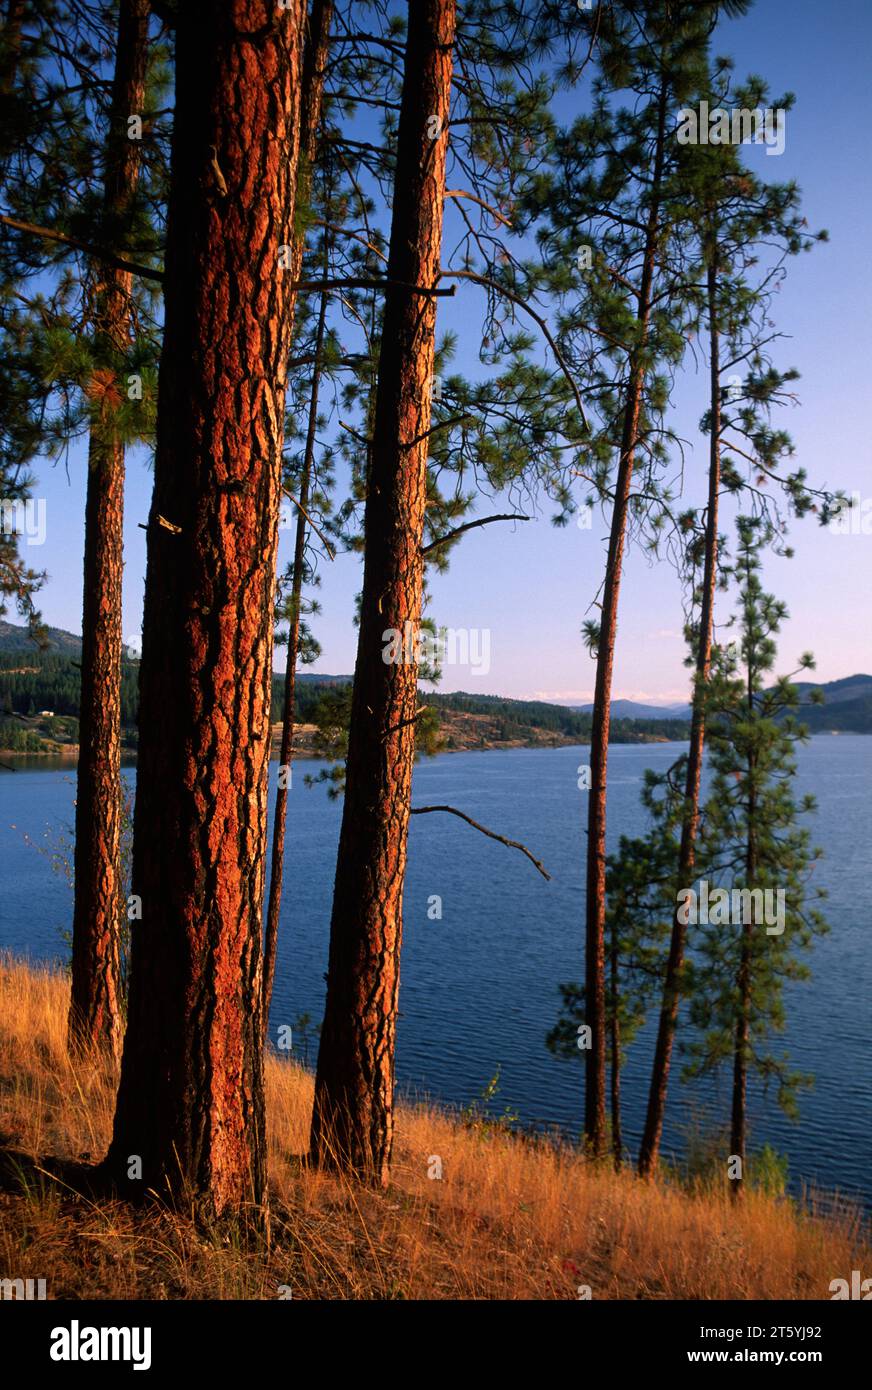 Ponderosa pine on Mission Point, Lake Roosevelt National Recreation Area, Washington Stock Photo